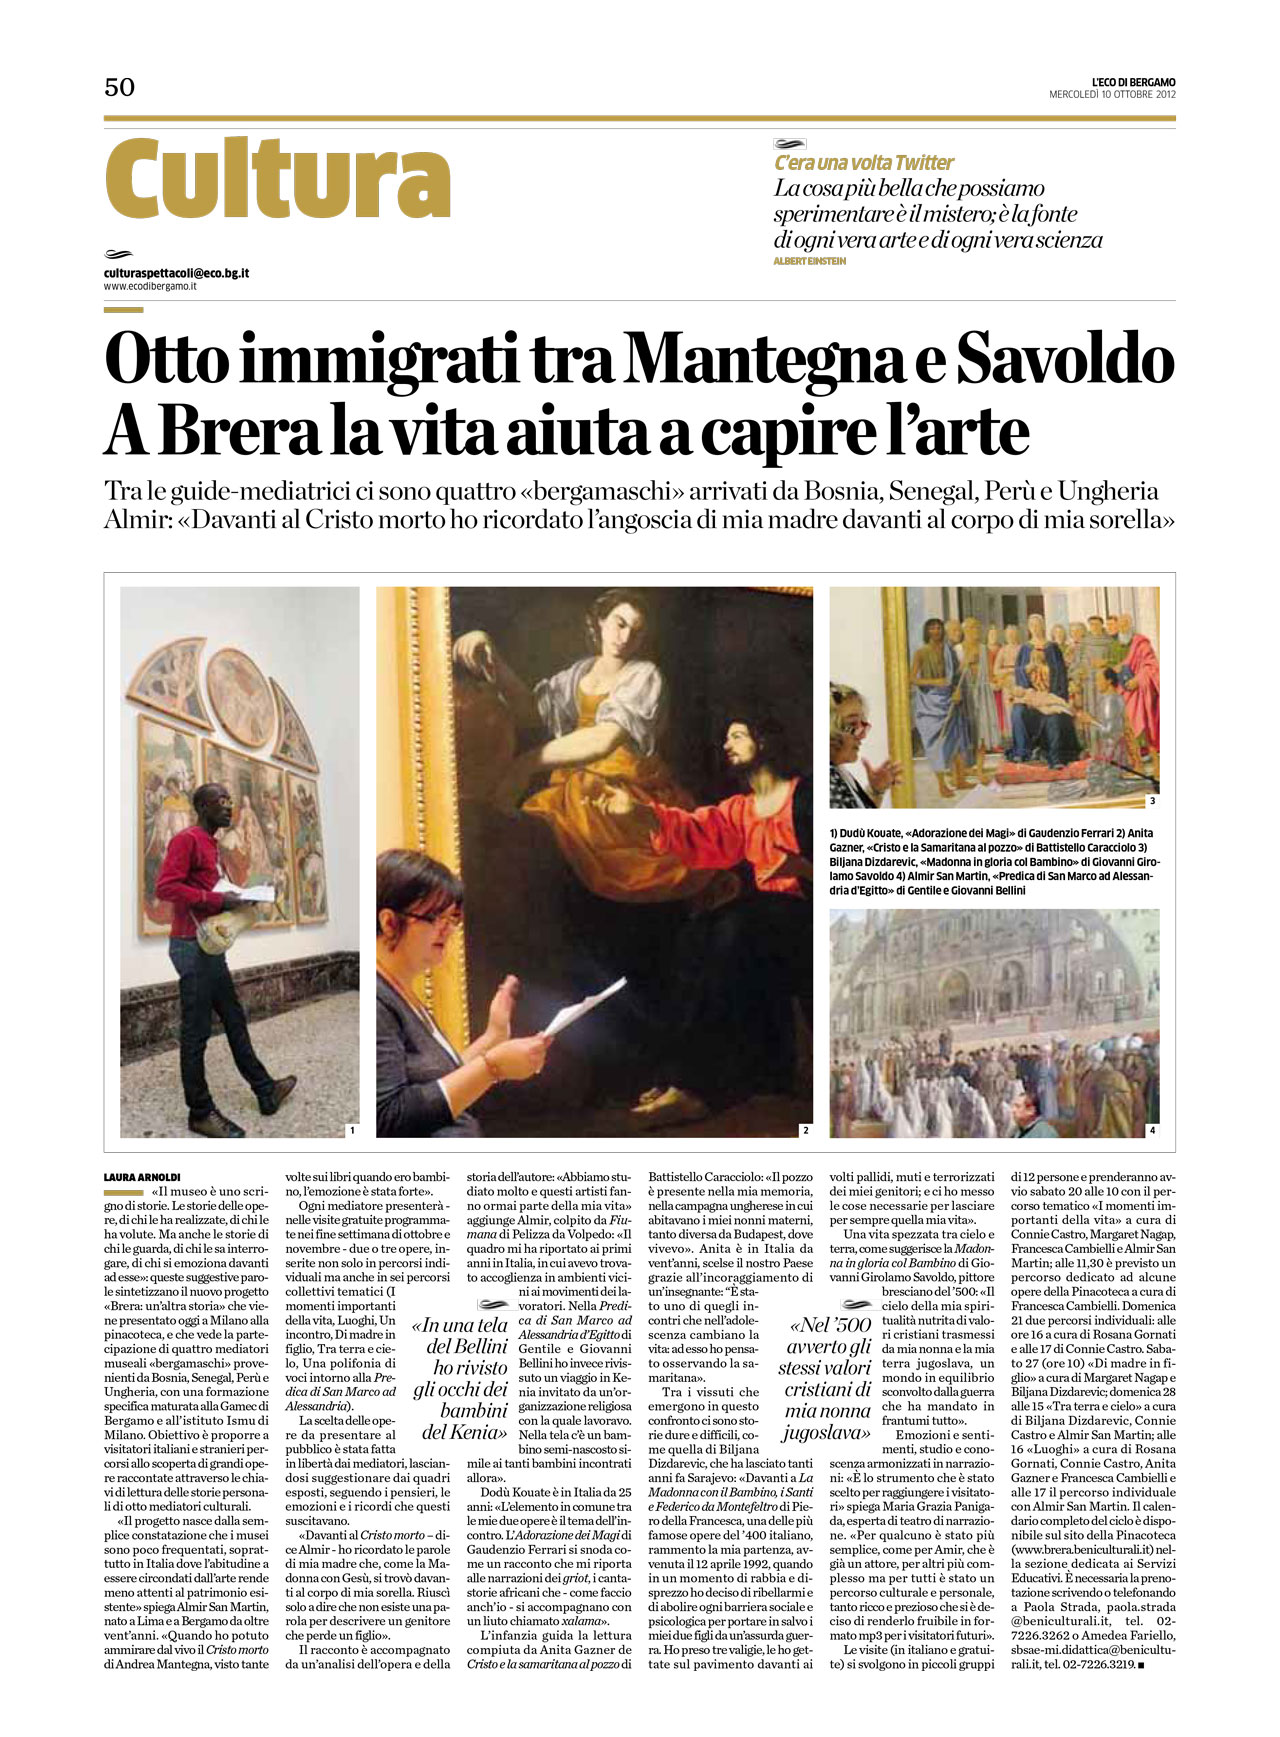 Scansione dell'articolo “Otto immigrati tra Mantegna e Savoldo. A Brera la vita aiuta a capire l’arte”, Eco di Bergamo, 10 ottobre 2012.